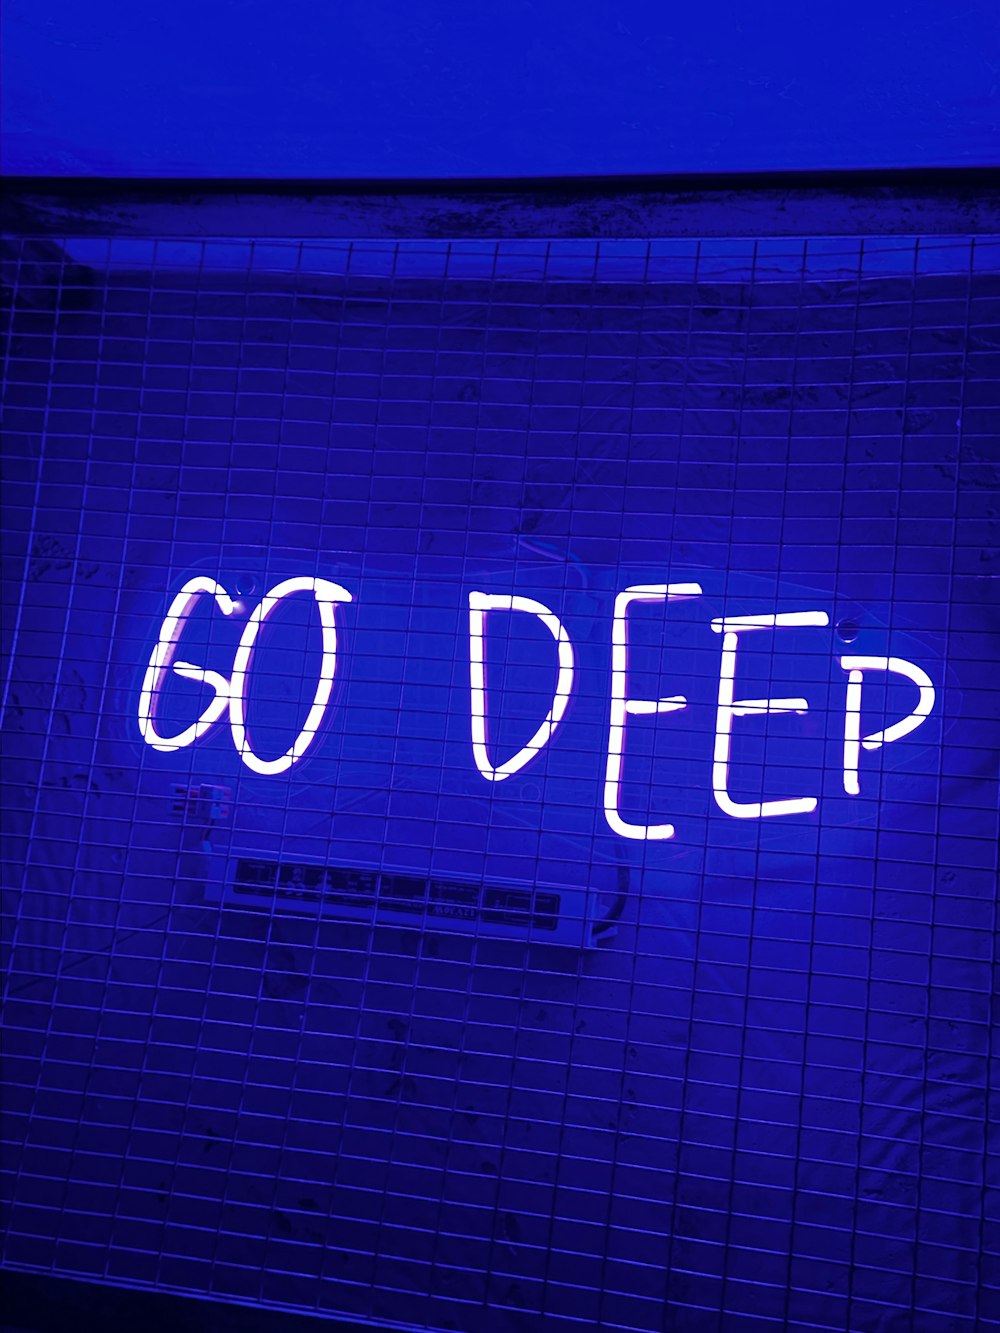 eine Leuchtreklame mit der Aufschrift "Go Deep" an einer Wand